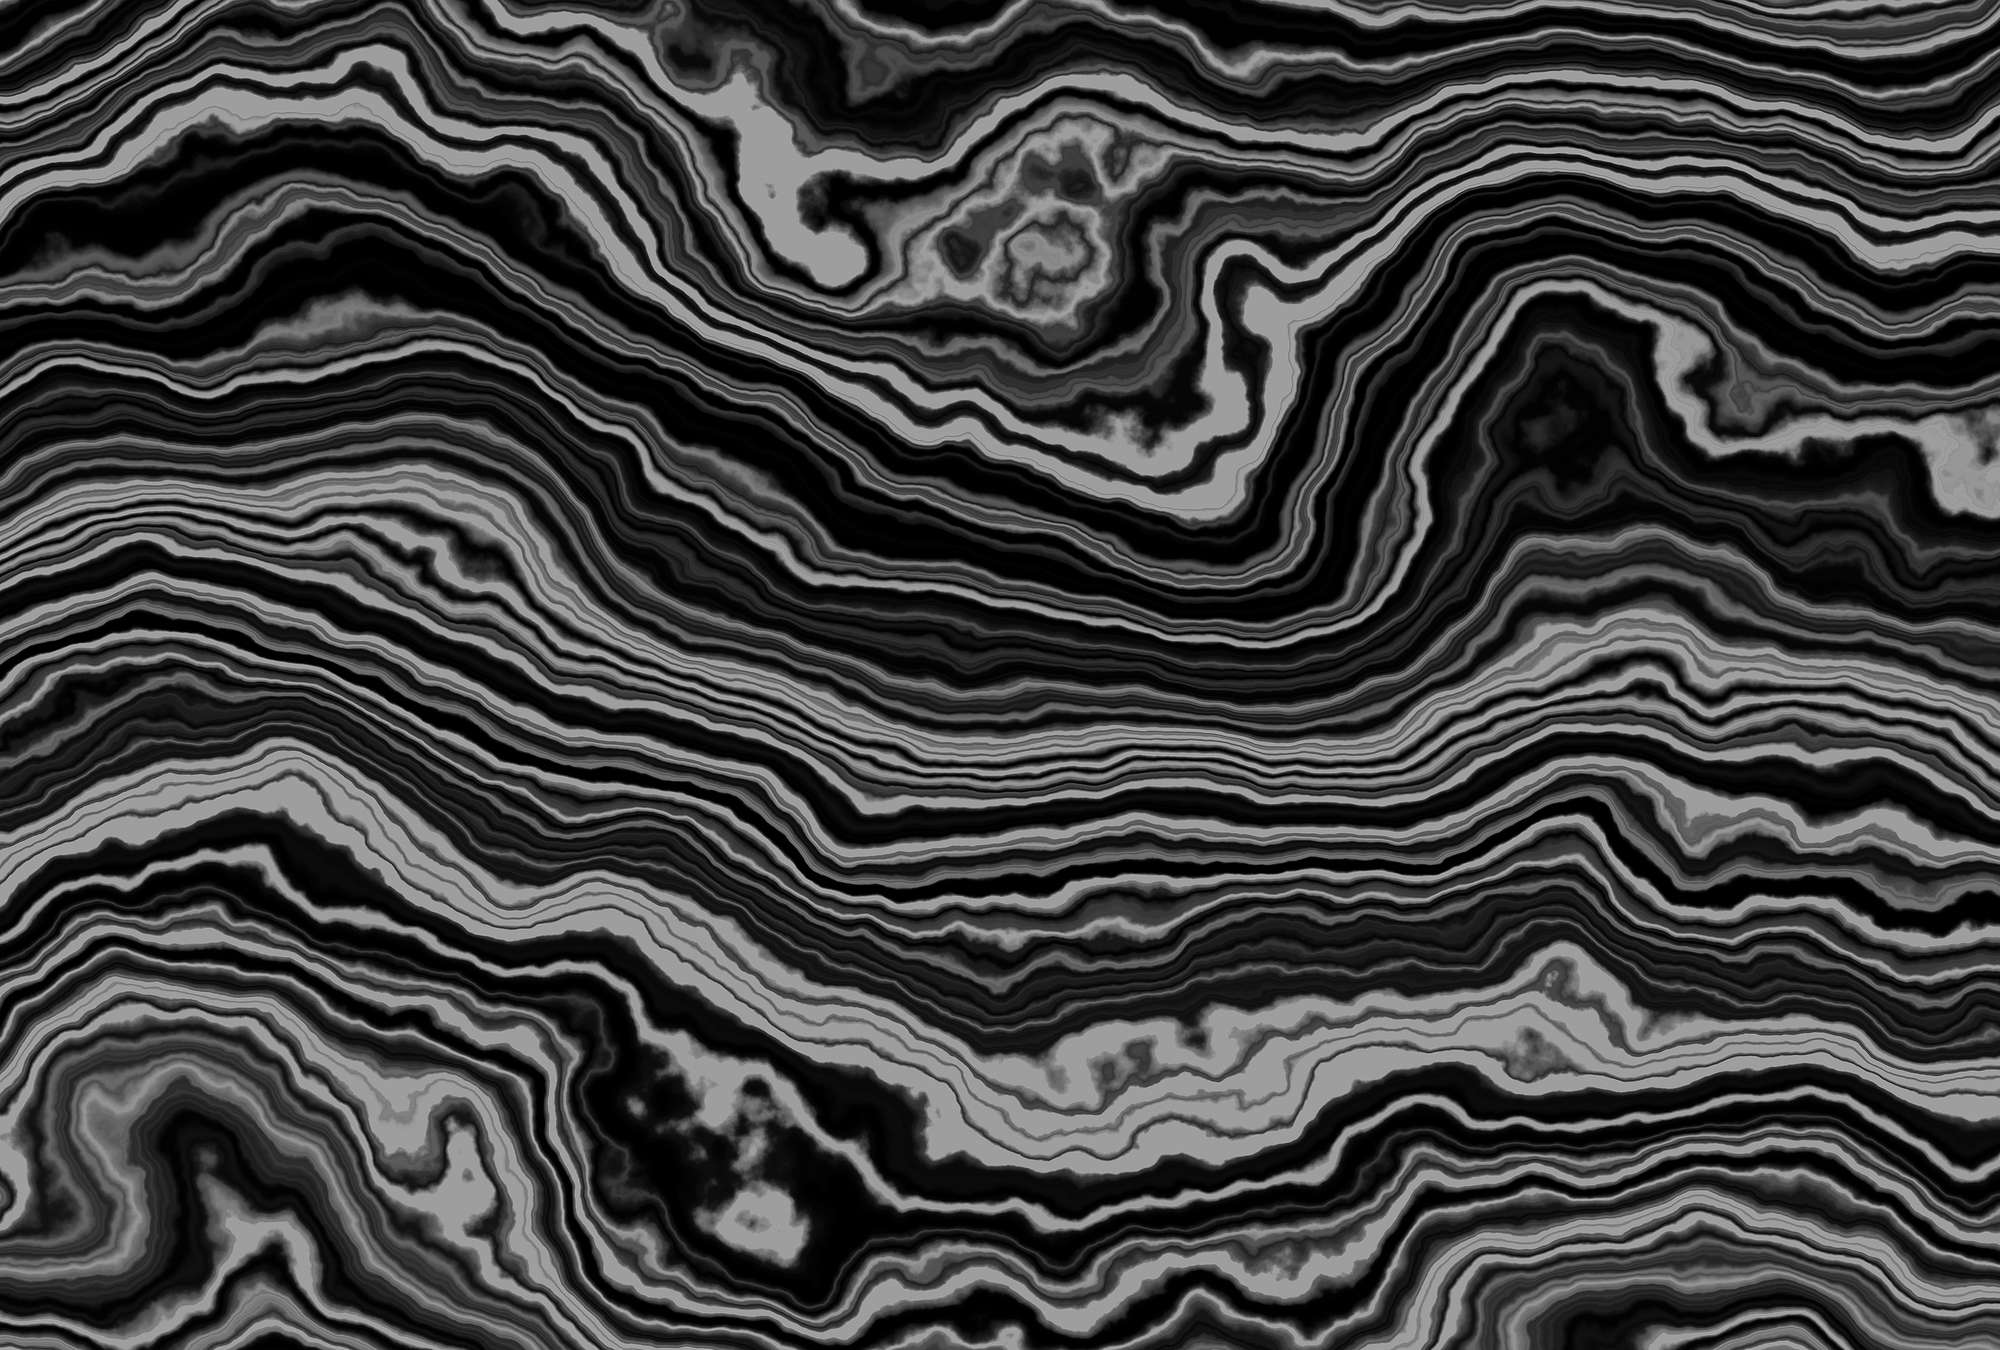             Onyx 1 - Sezione trasversale di un marmo onice come sfondo fotografico - Nero, bianco | Vello liscio opaco
        